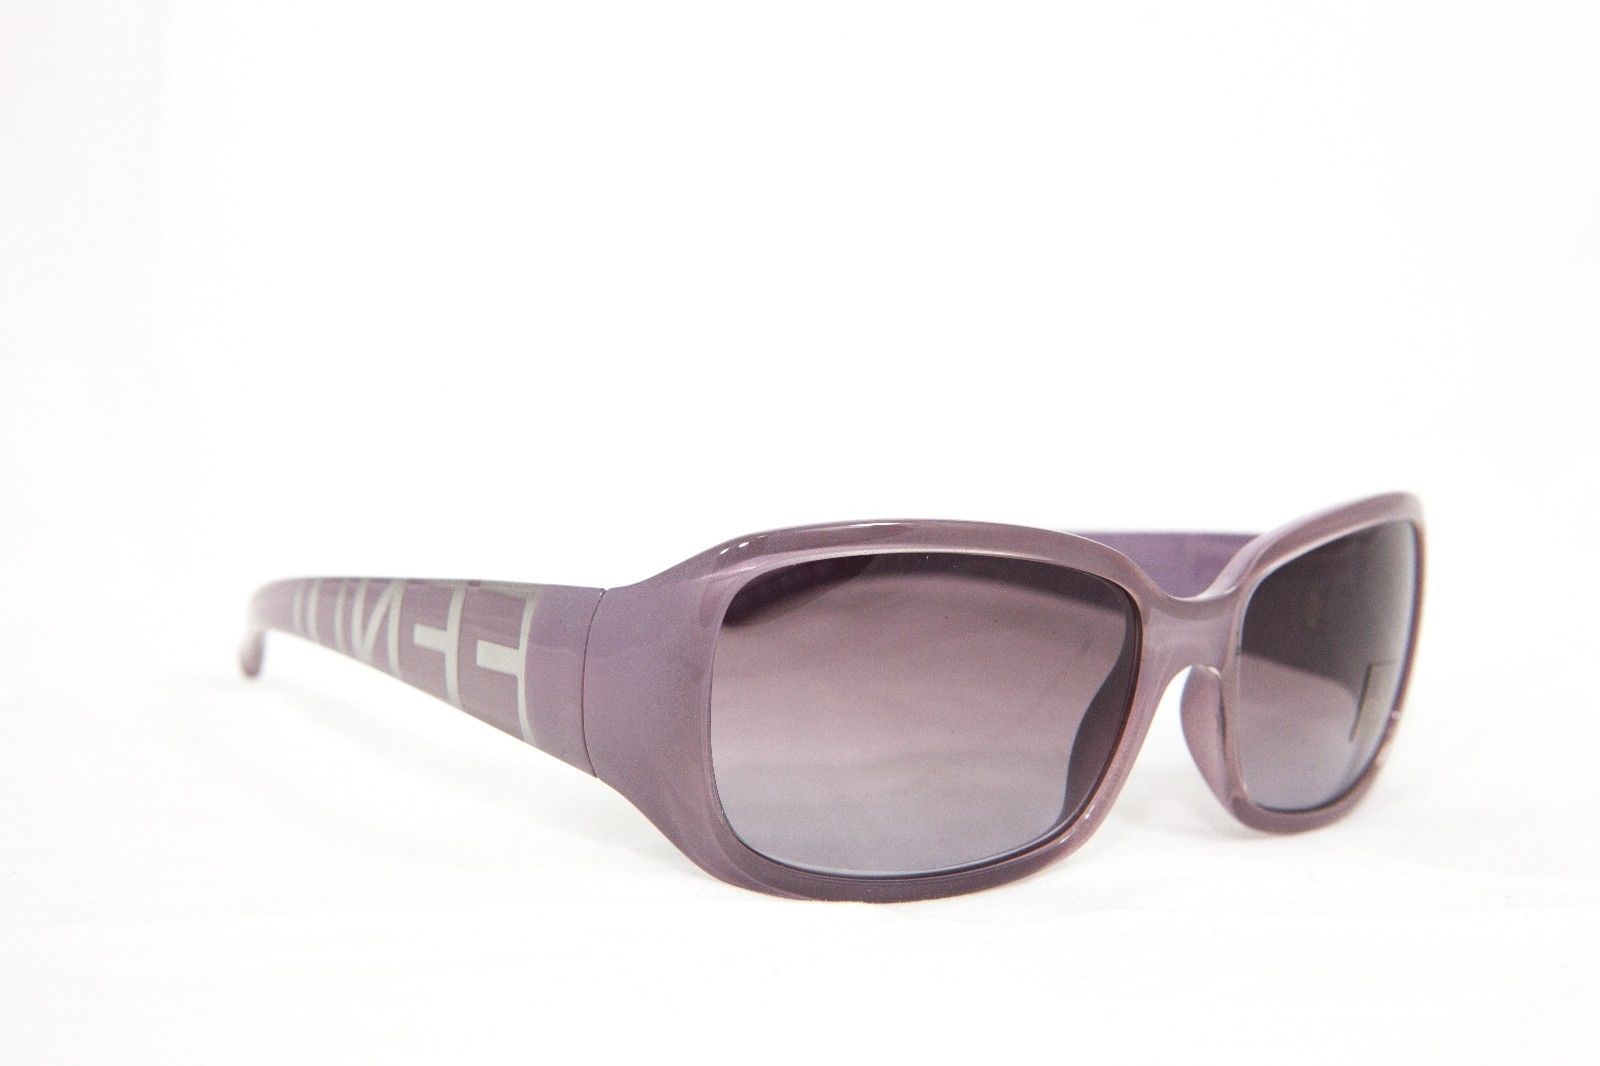 Fendi Rimmed Eyeglasses Glasses Sunglasses FS 350 516